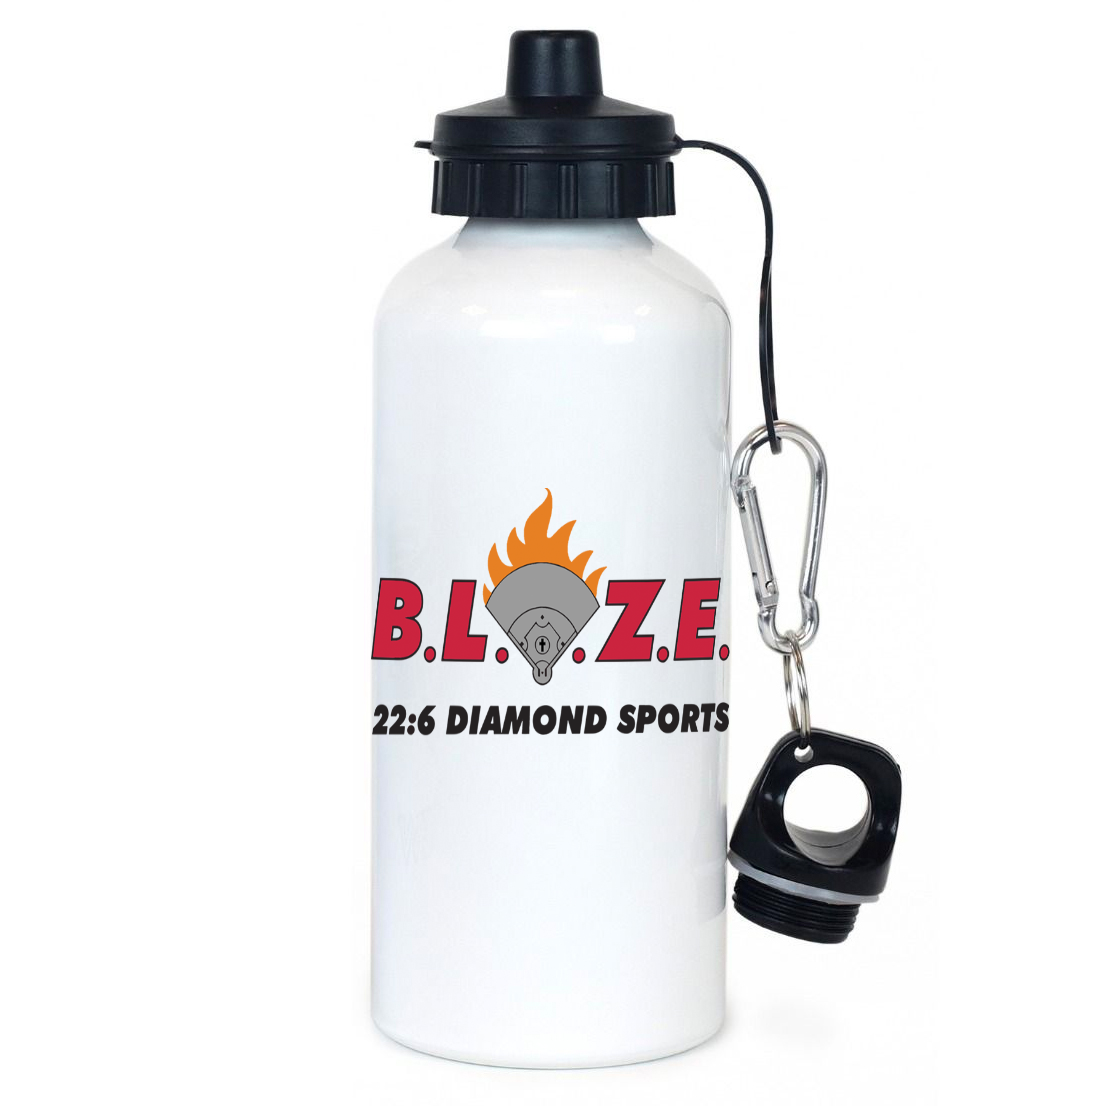 BLAZE 22:6 Diamond Sports Team Water Bottle